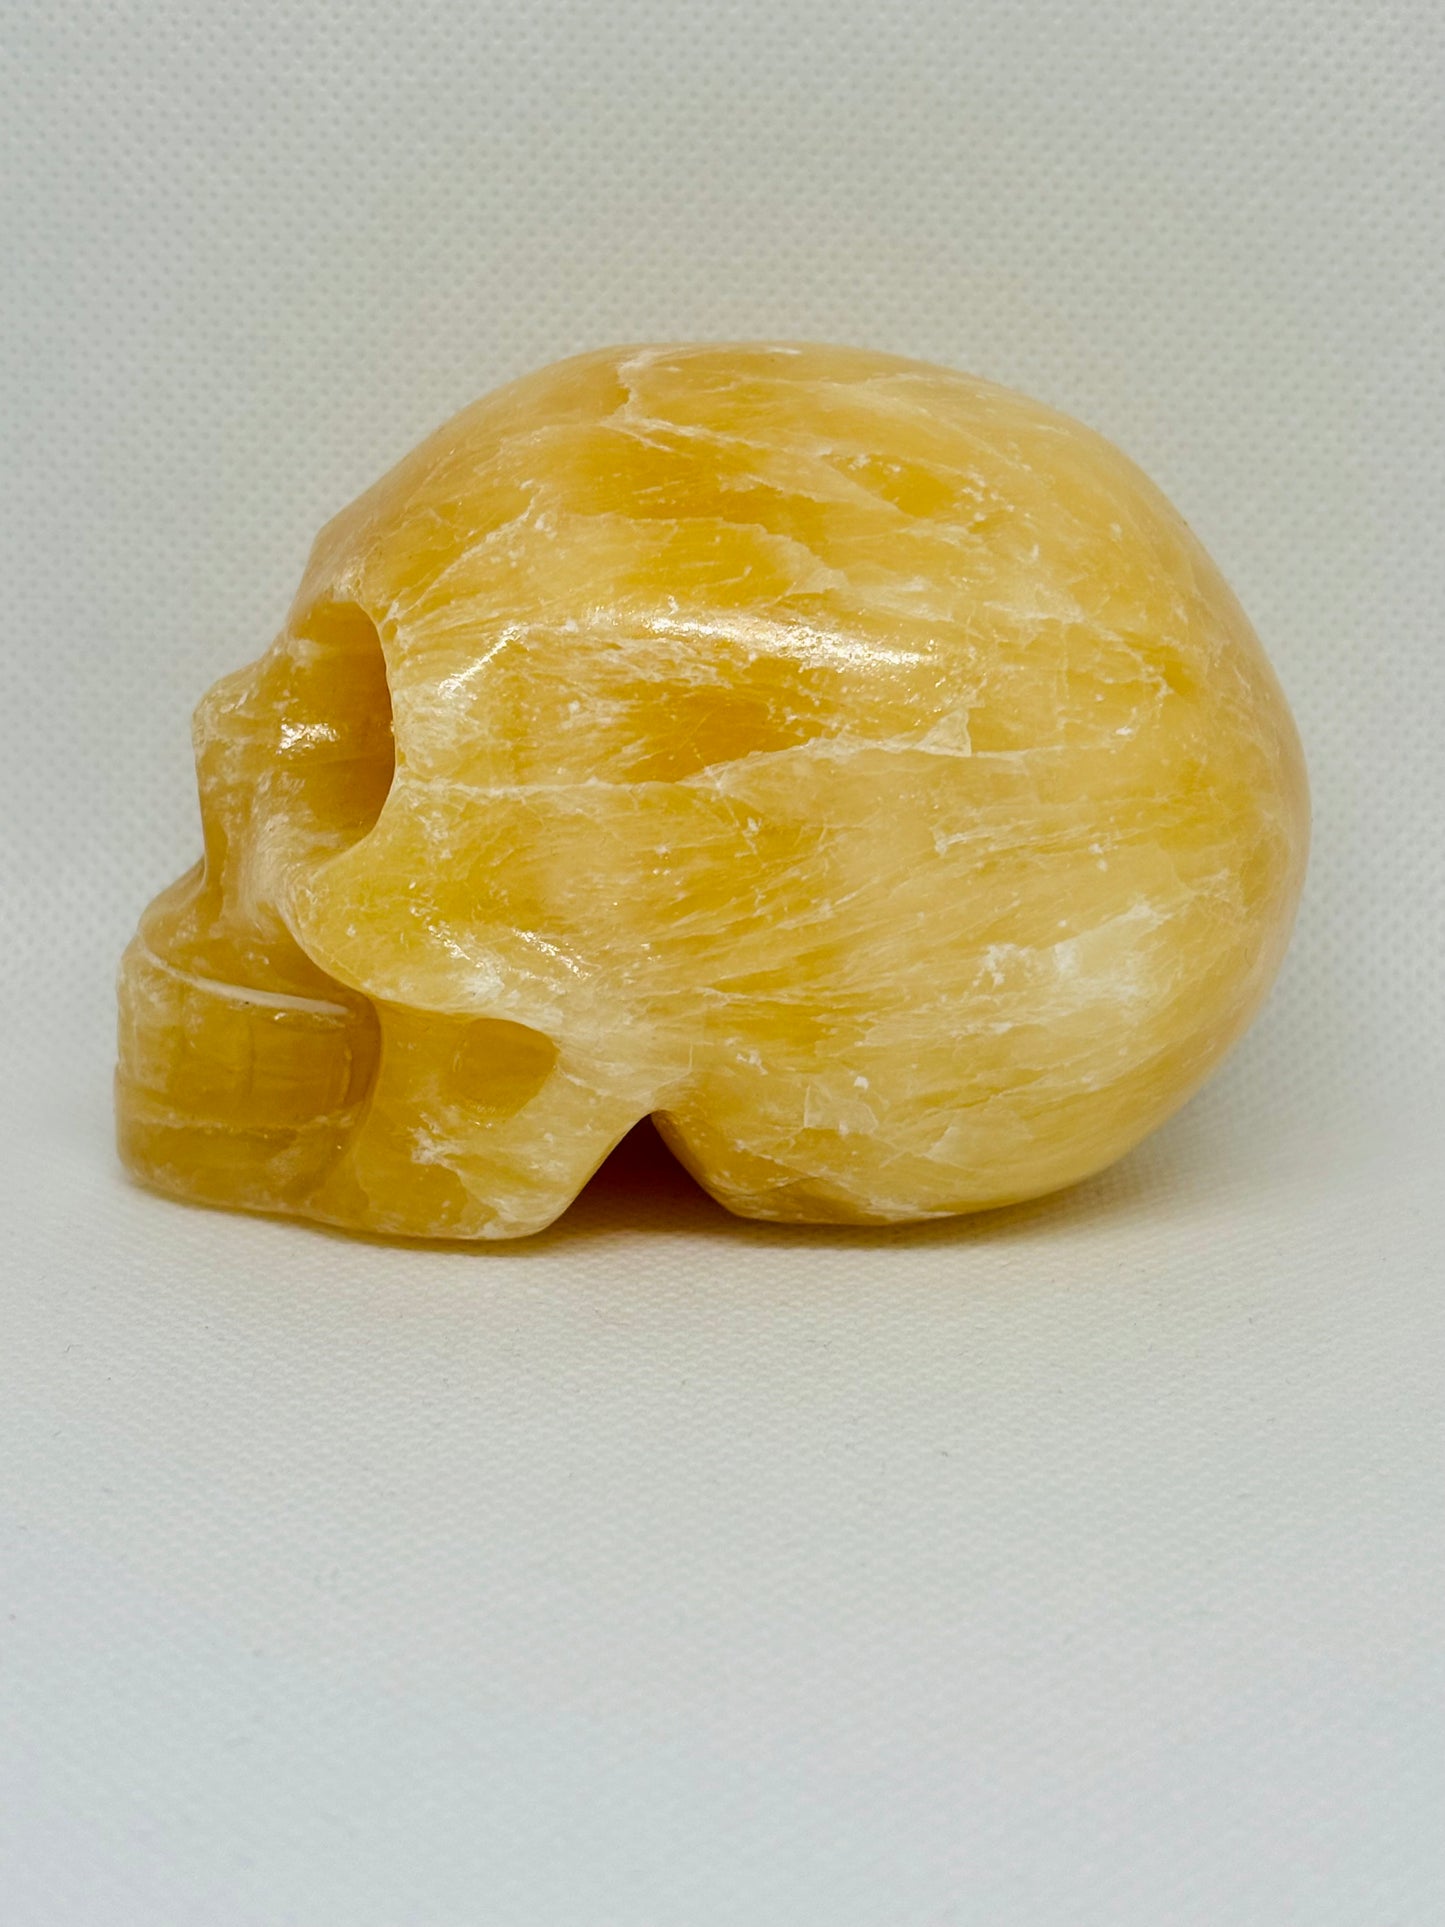 Carved Crystal Skull 1.1lb #OC